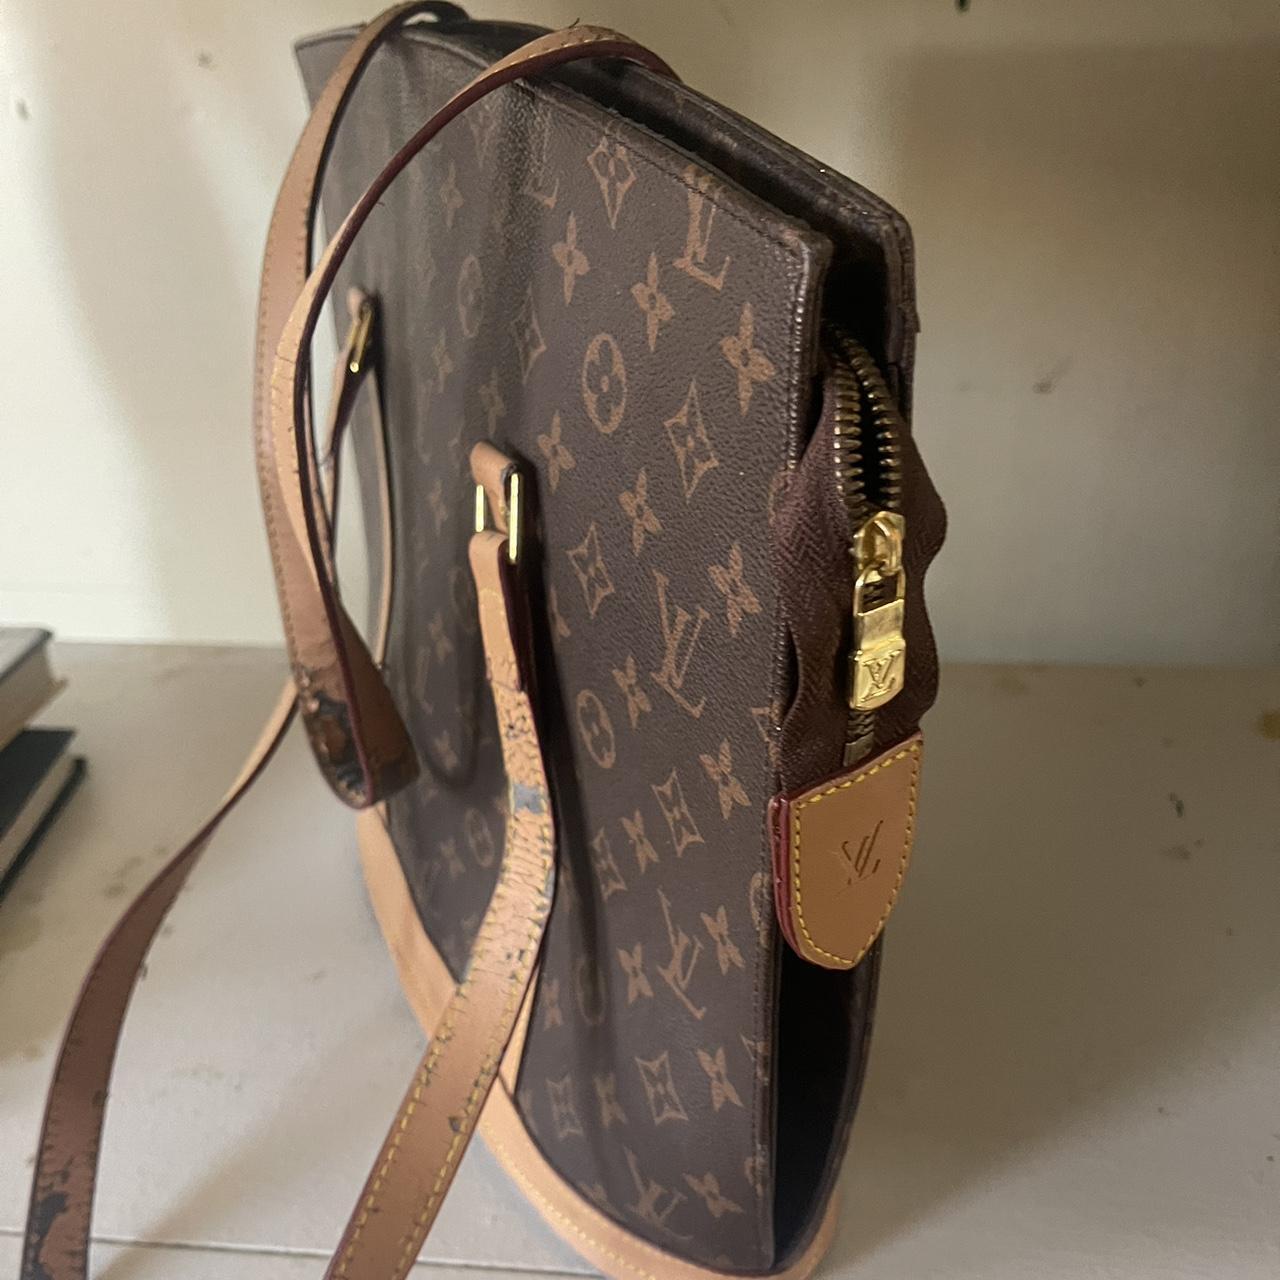 Louis Vuitton carrier bag. Have multiple!! - Depop